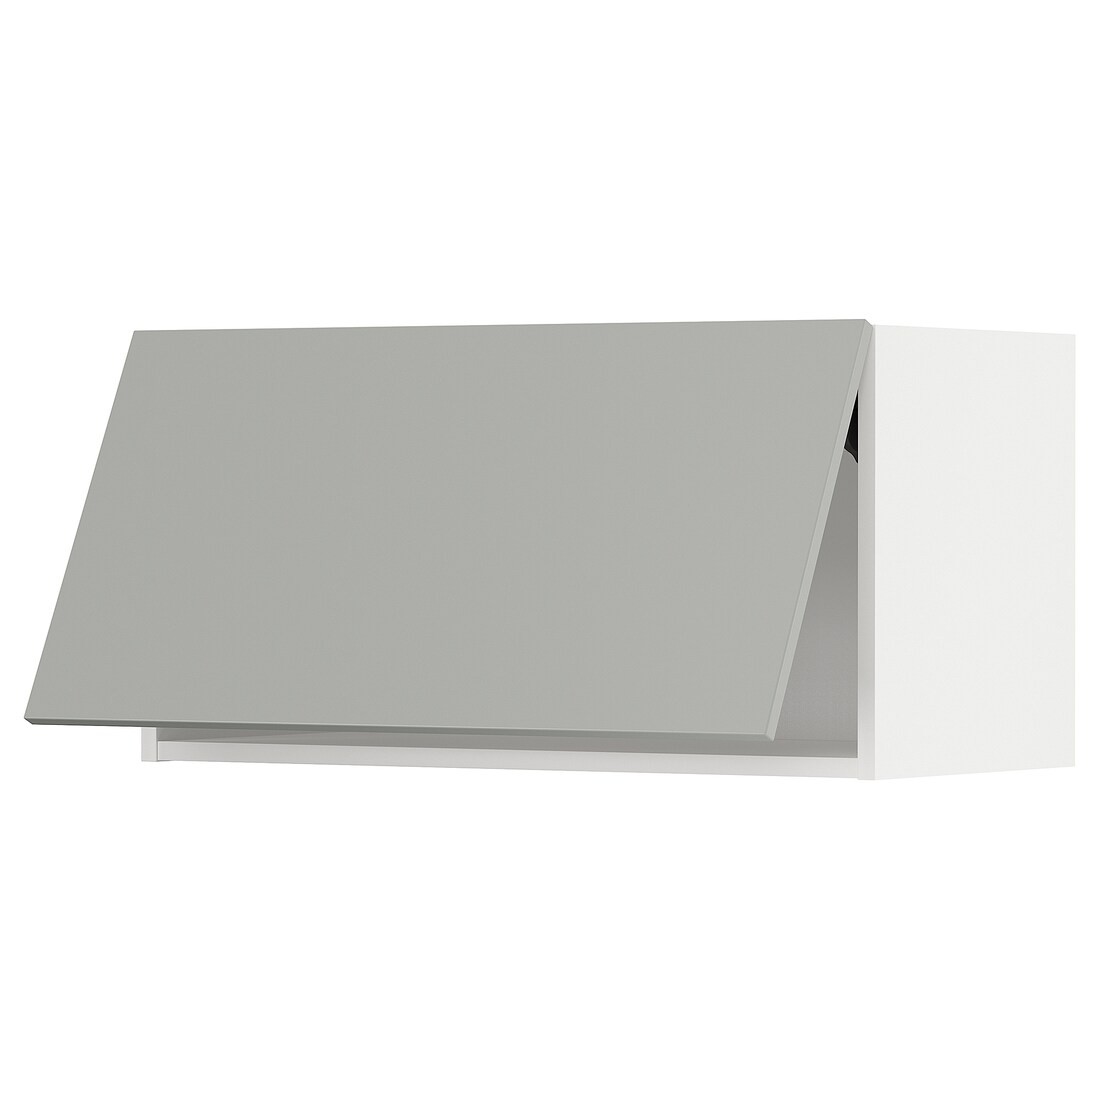 METOD Навесной горизонтальный шкаф, нажимной механизм, белый / Хавсторп светло-серый, 80x40 см